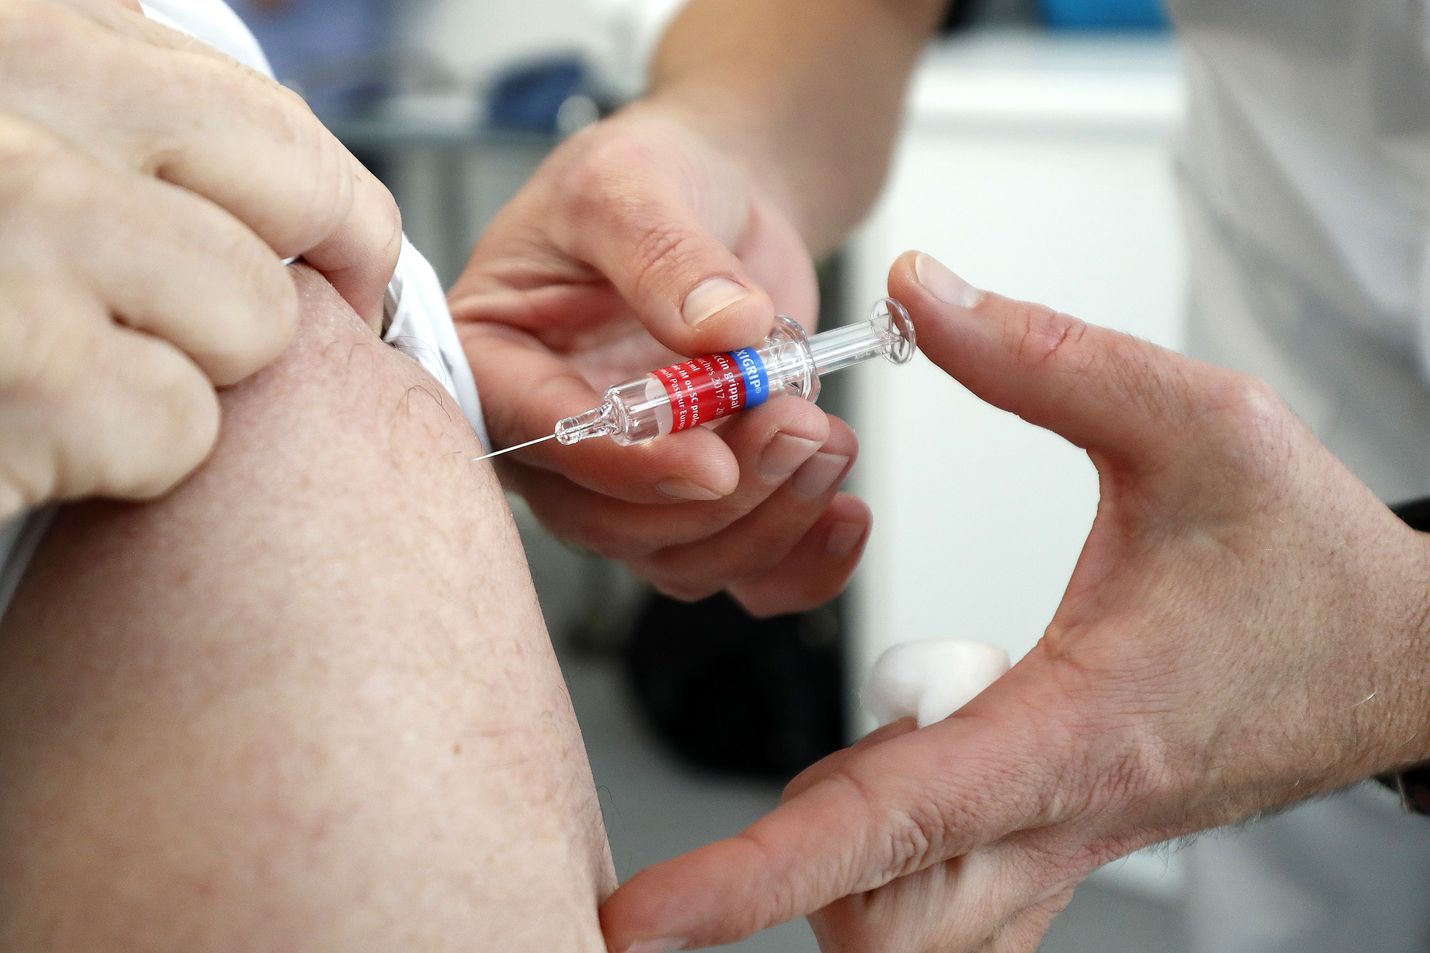 Suomessa rokotetaan influenssaa vastaan entistä enemmän, mutta keskustelu käy kiivaana, että kannattaako se. 